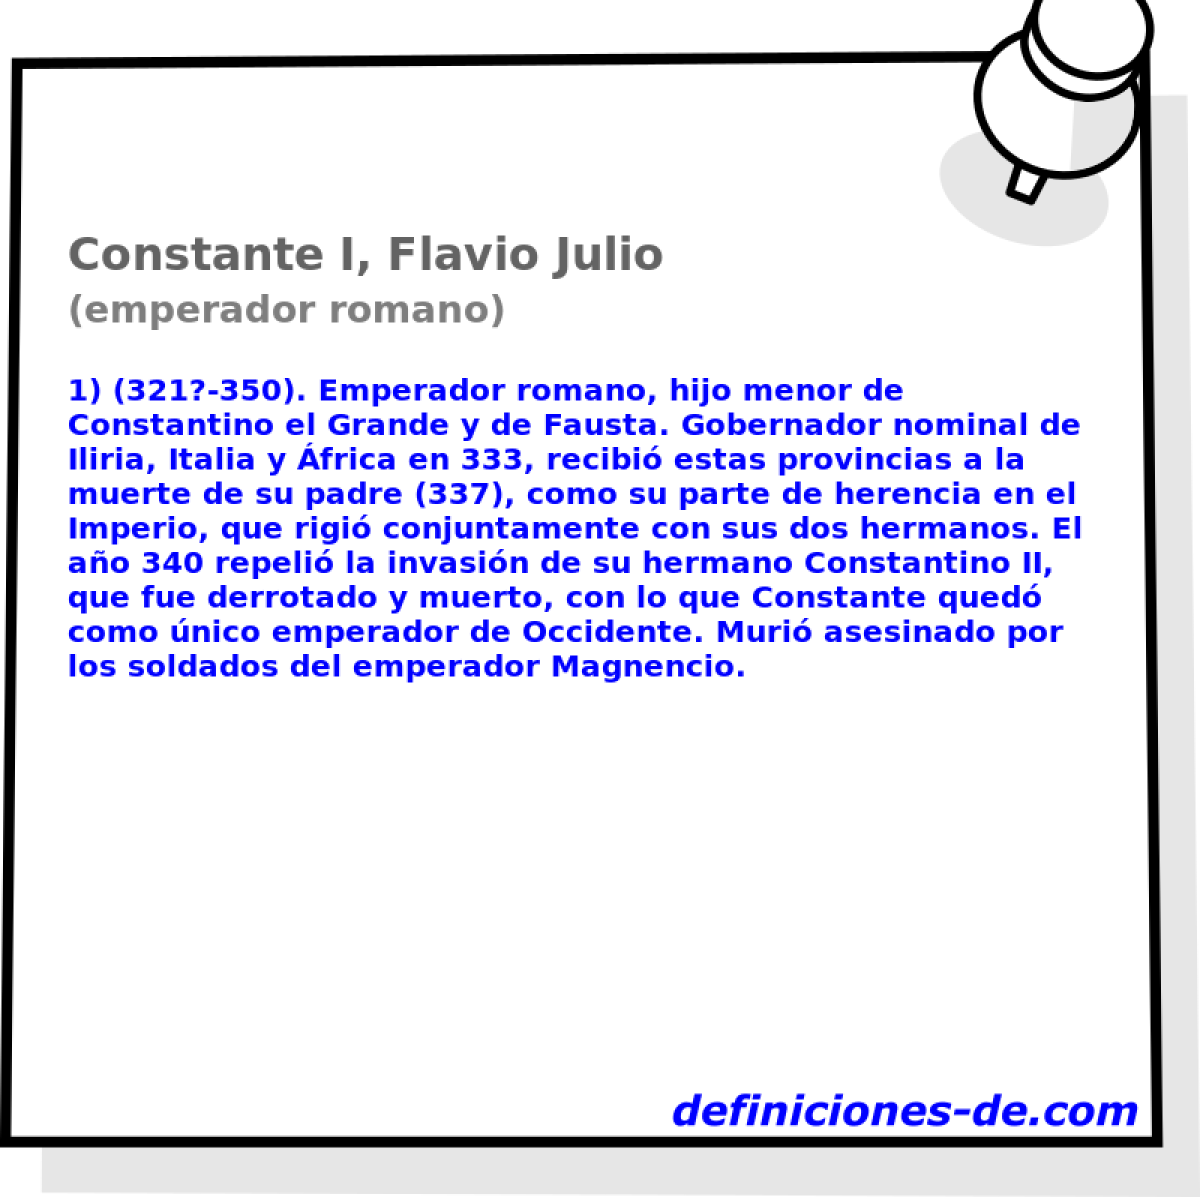 Constante I, Flavio Julio (emperador romano)